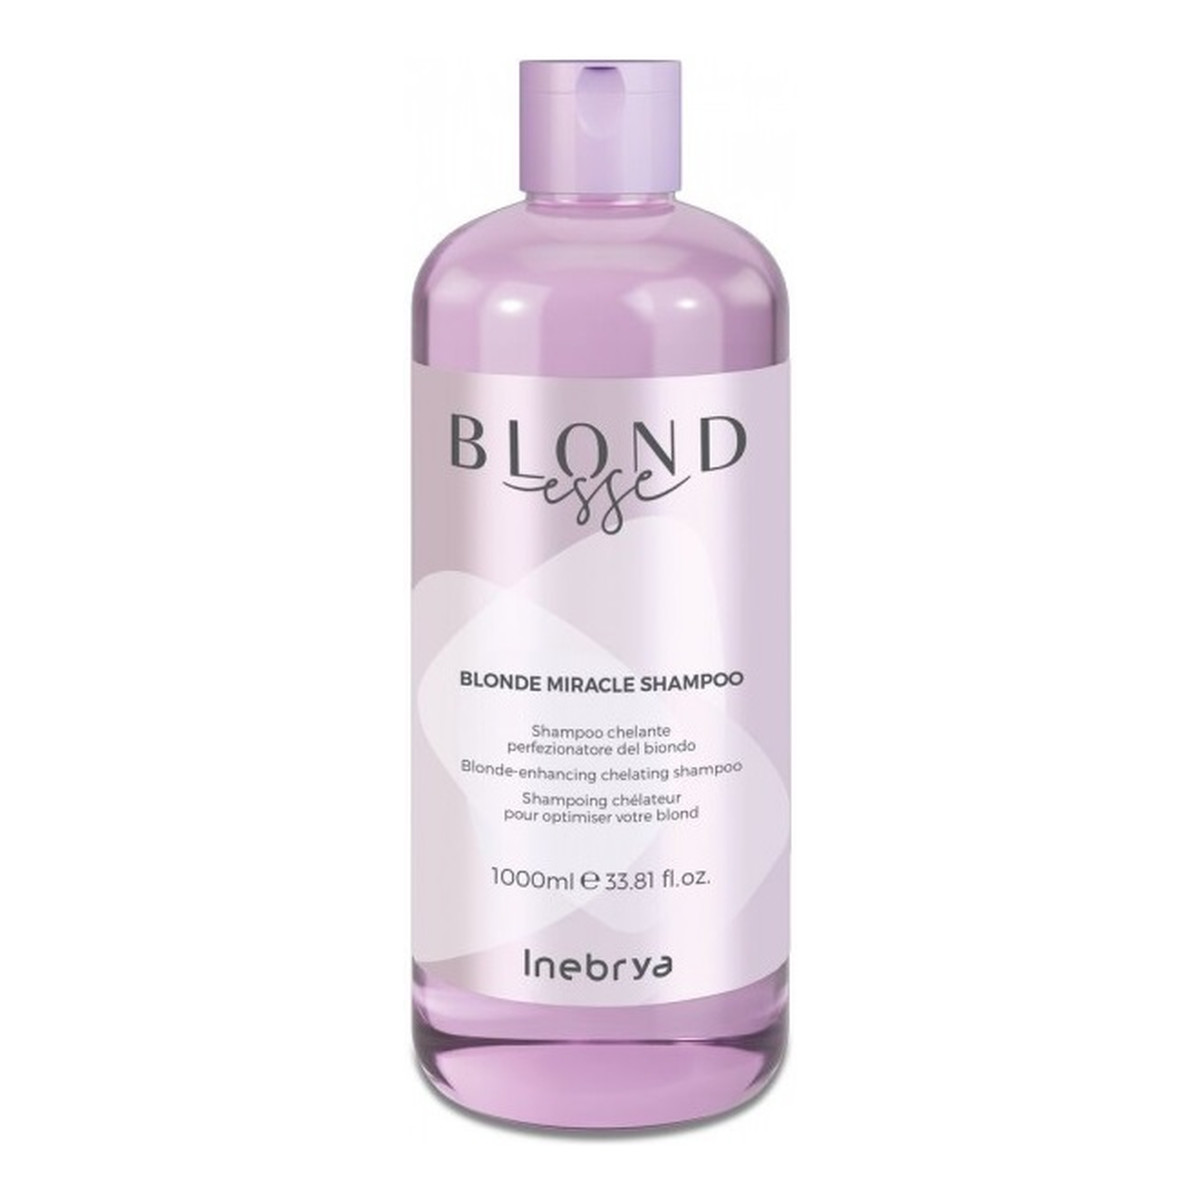 Inebrya Blondesse blonde miracle shampoo odżywczy szampon do włosów blond 1000ml